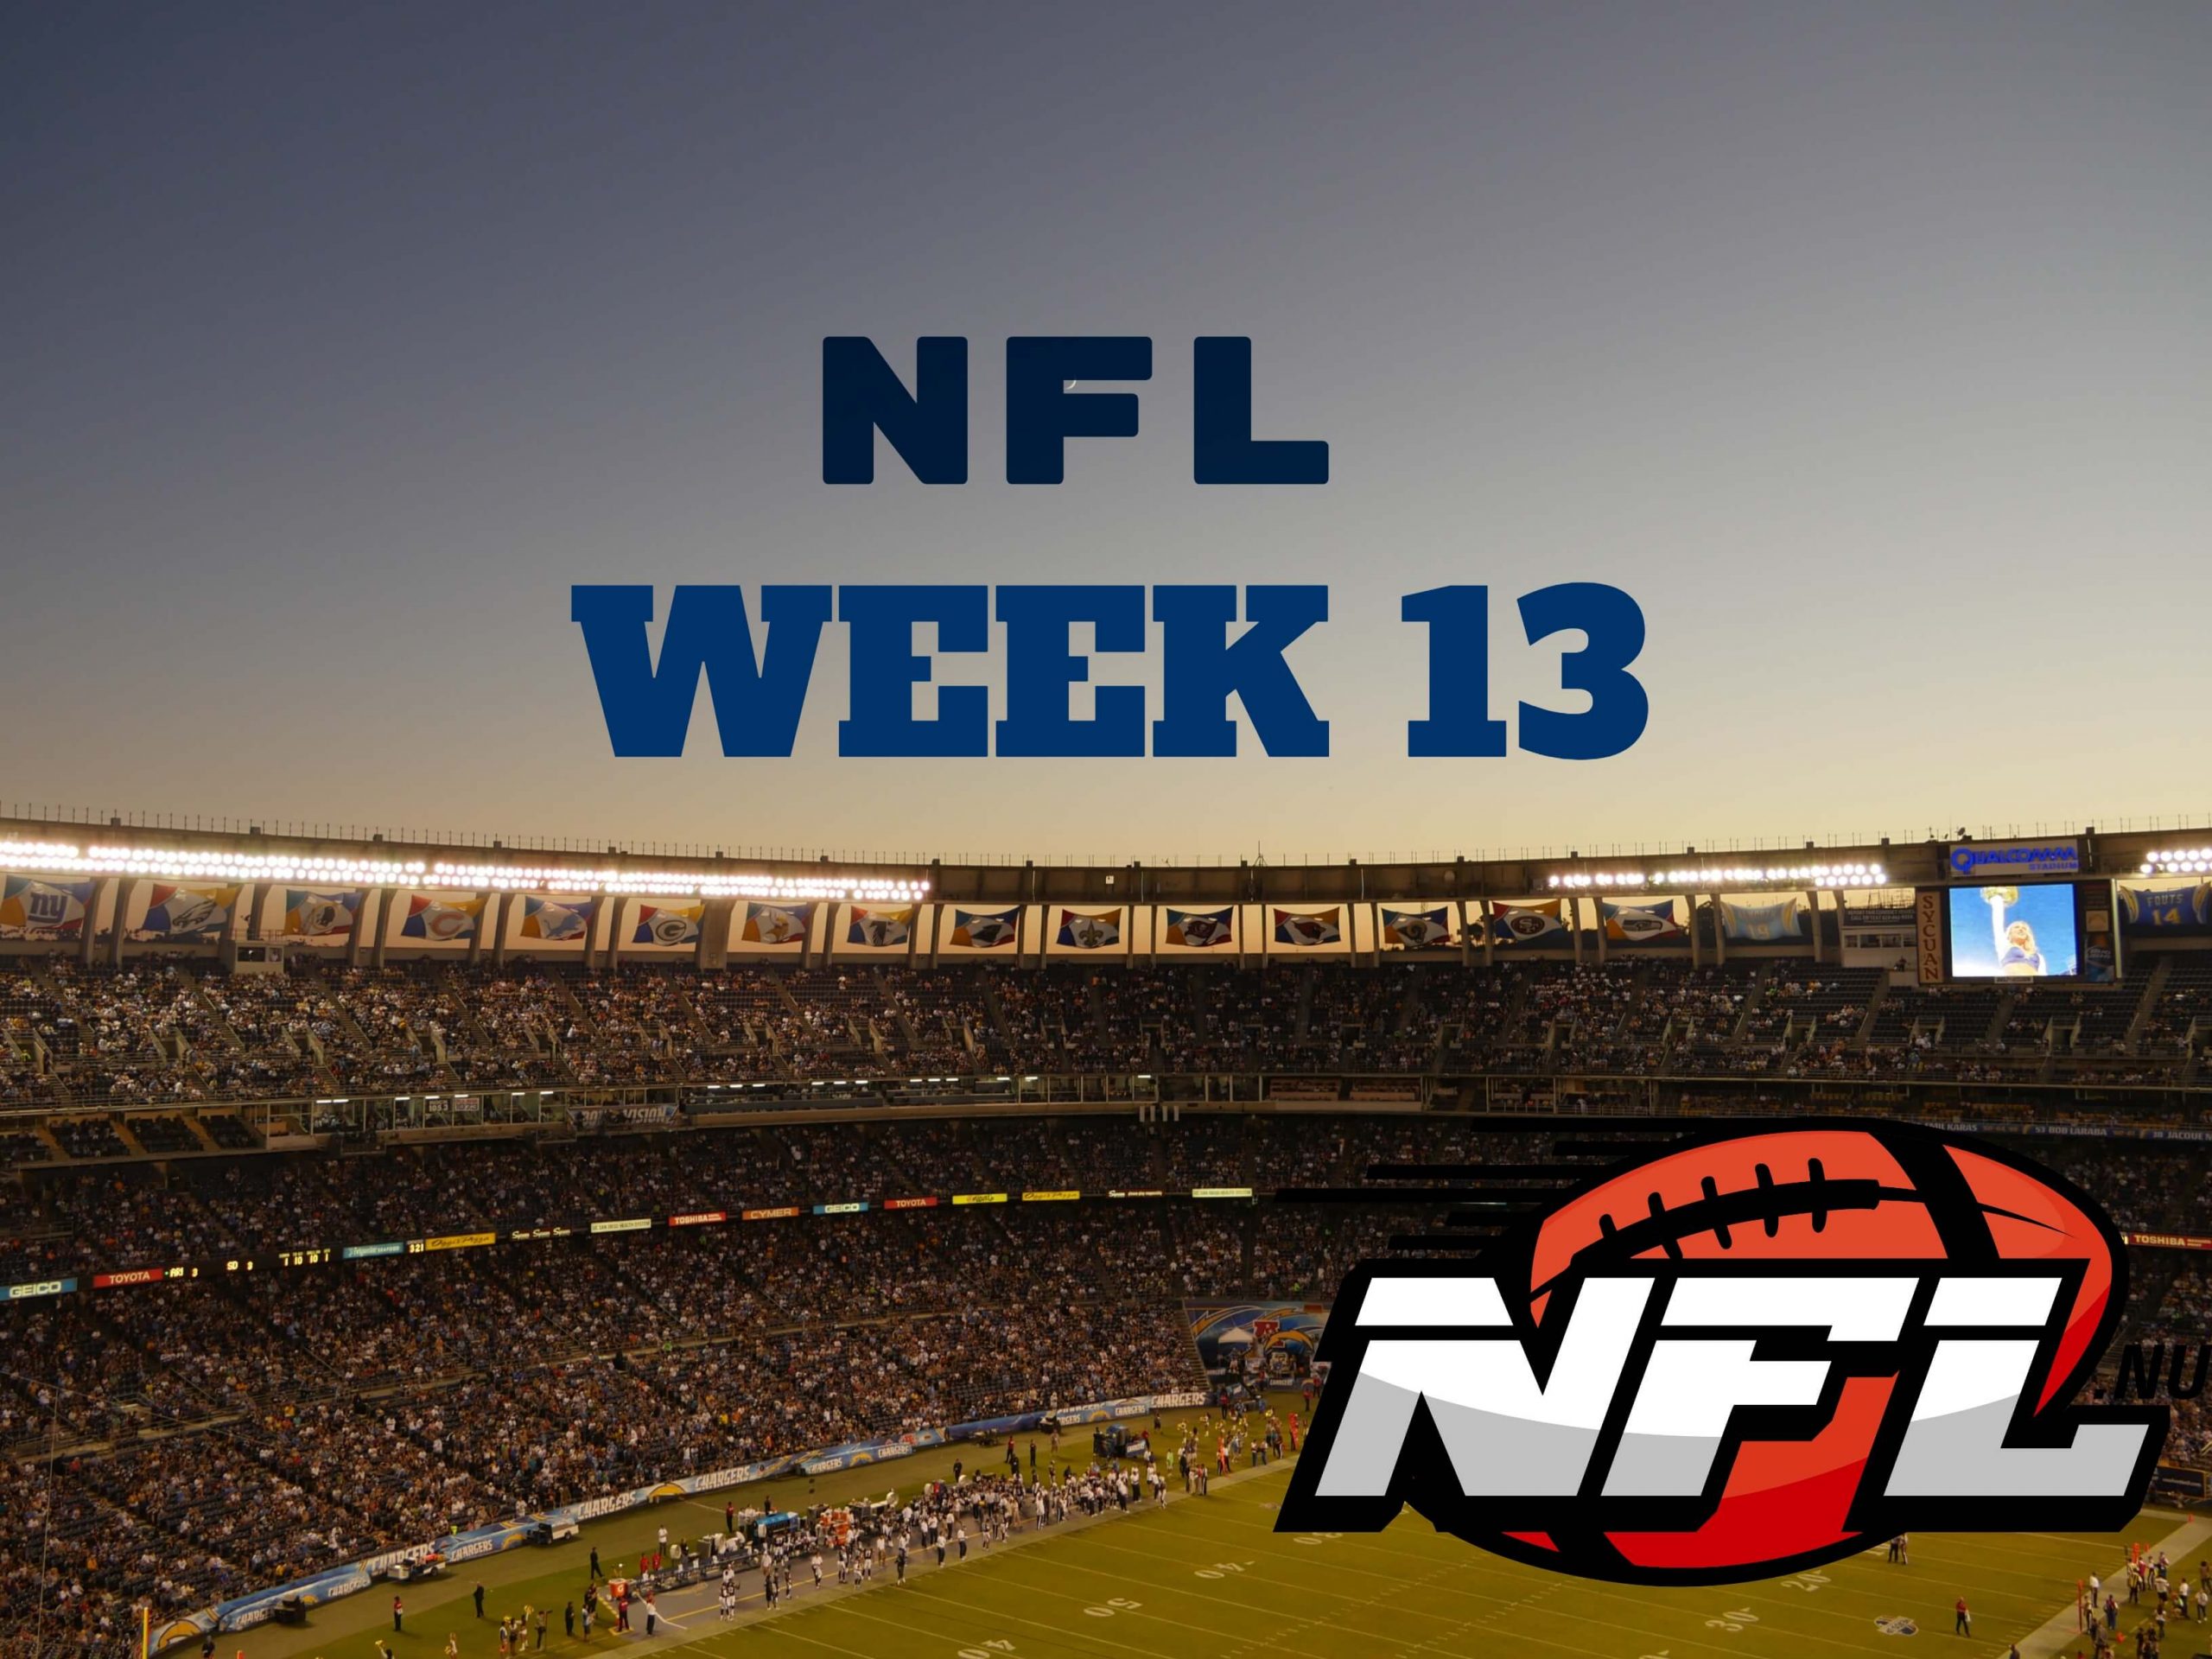 NFL Week 13